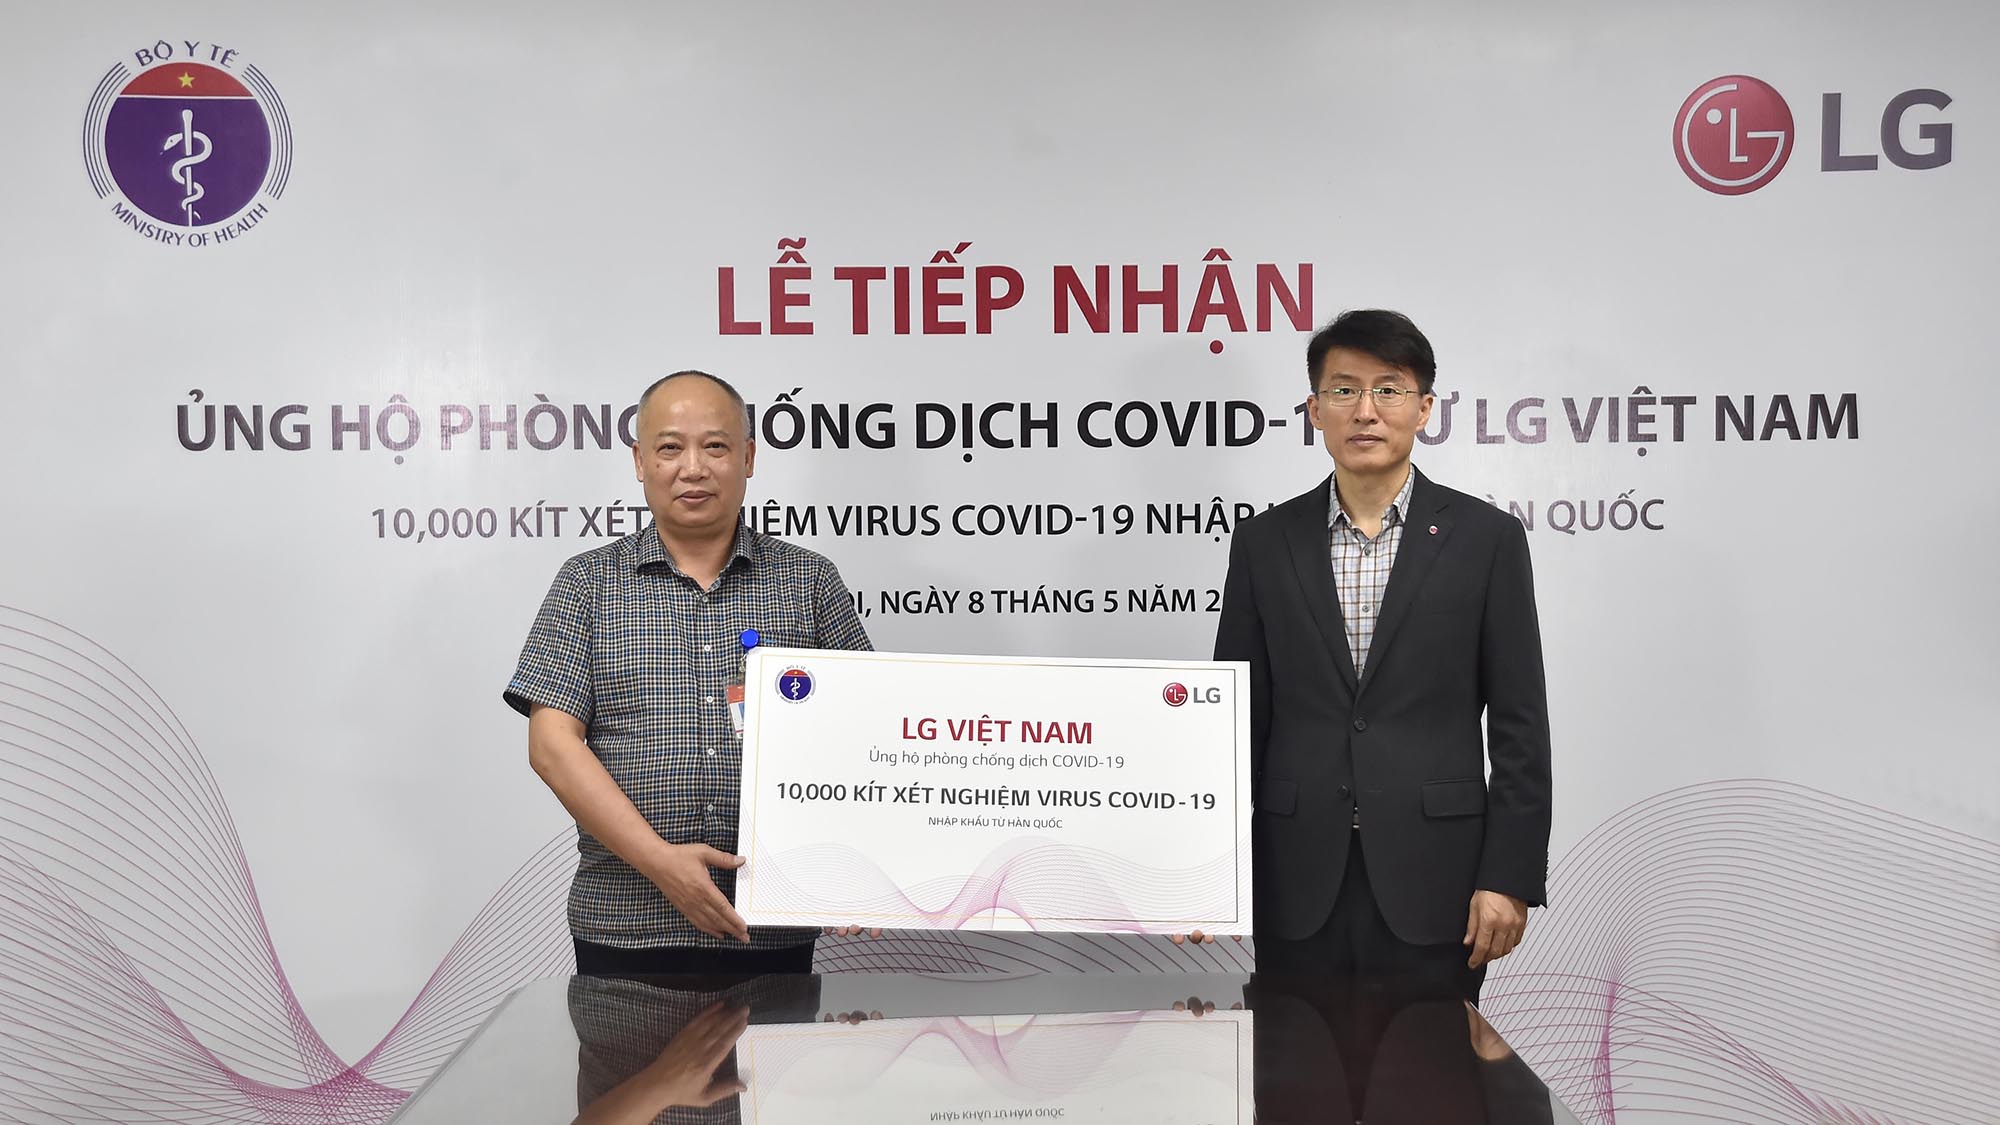 LG tài trợ Bộ y tế Việt Nam 10,000 bộ kit xét nghiệm Covid-19 và các trang thiết bị y tế nhập khẩu từ Hàn Quốc